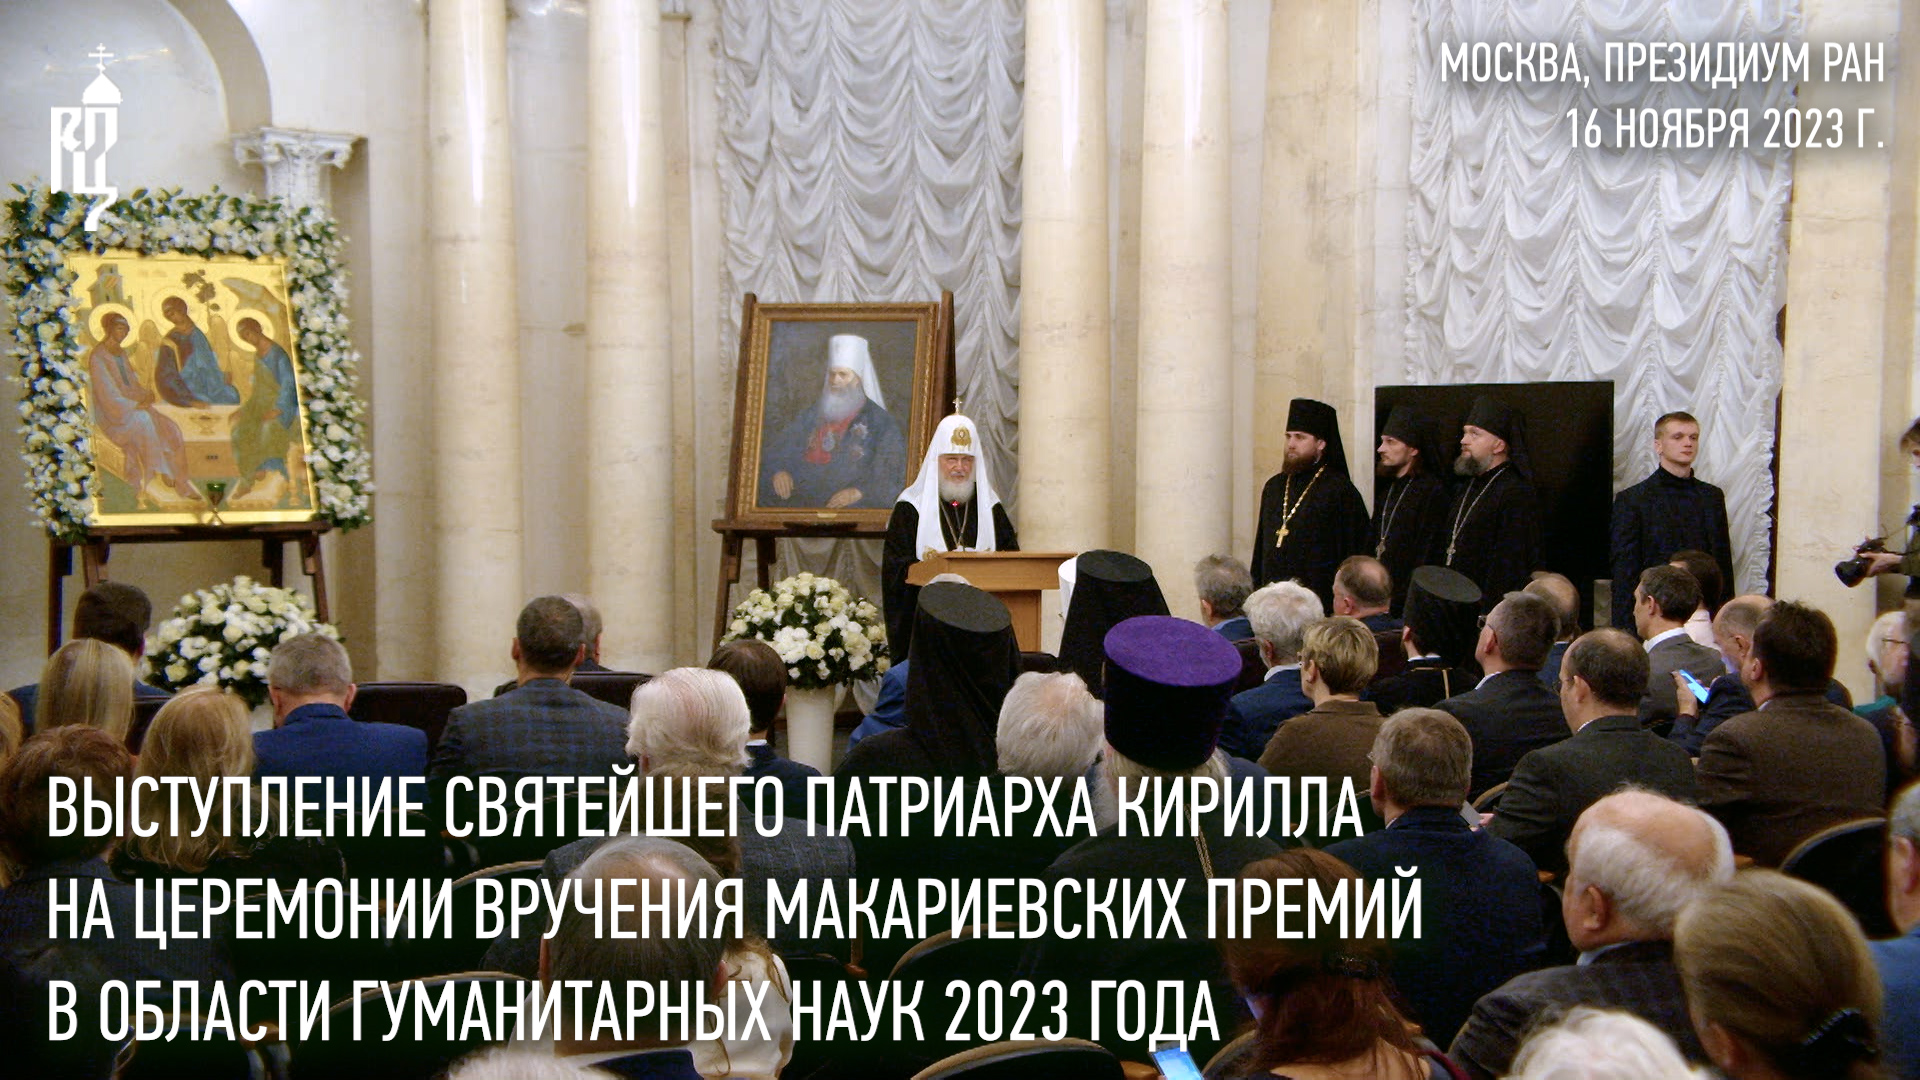 Выступление Святейшего Патриарха Кирилла на церемонии вручения Макариевских премий